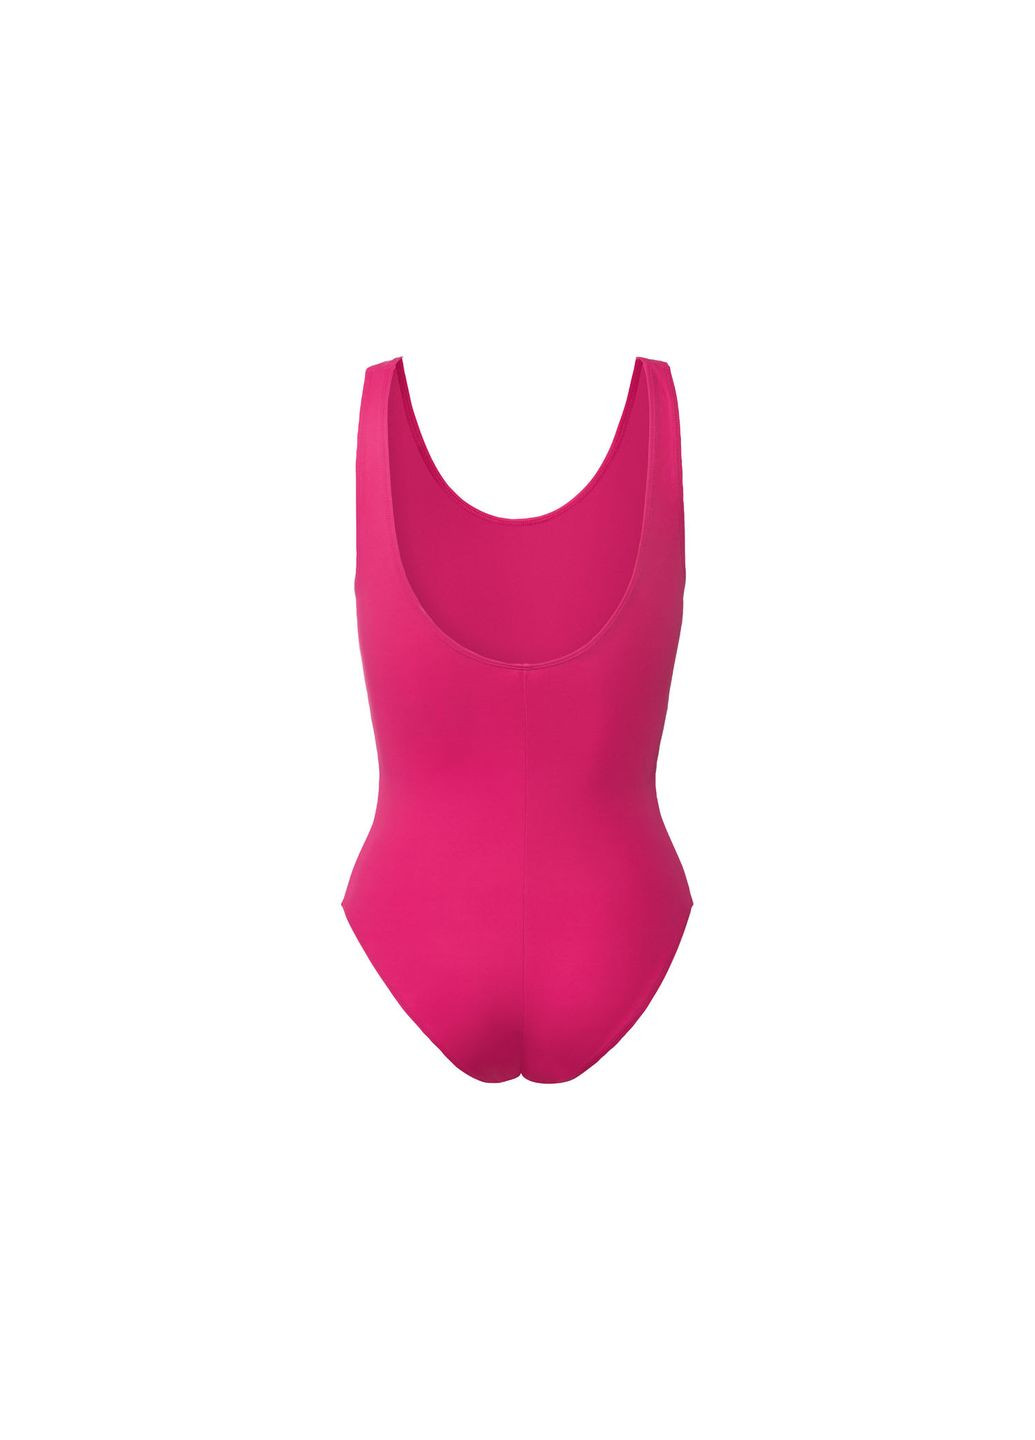 Рожевий купальник закритий на підкладці для жінки creora® 371866 рожевий бікіні Esmara